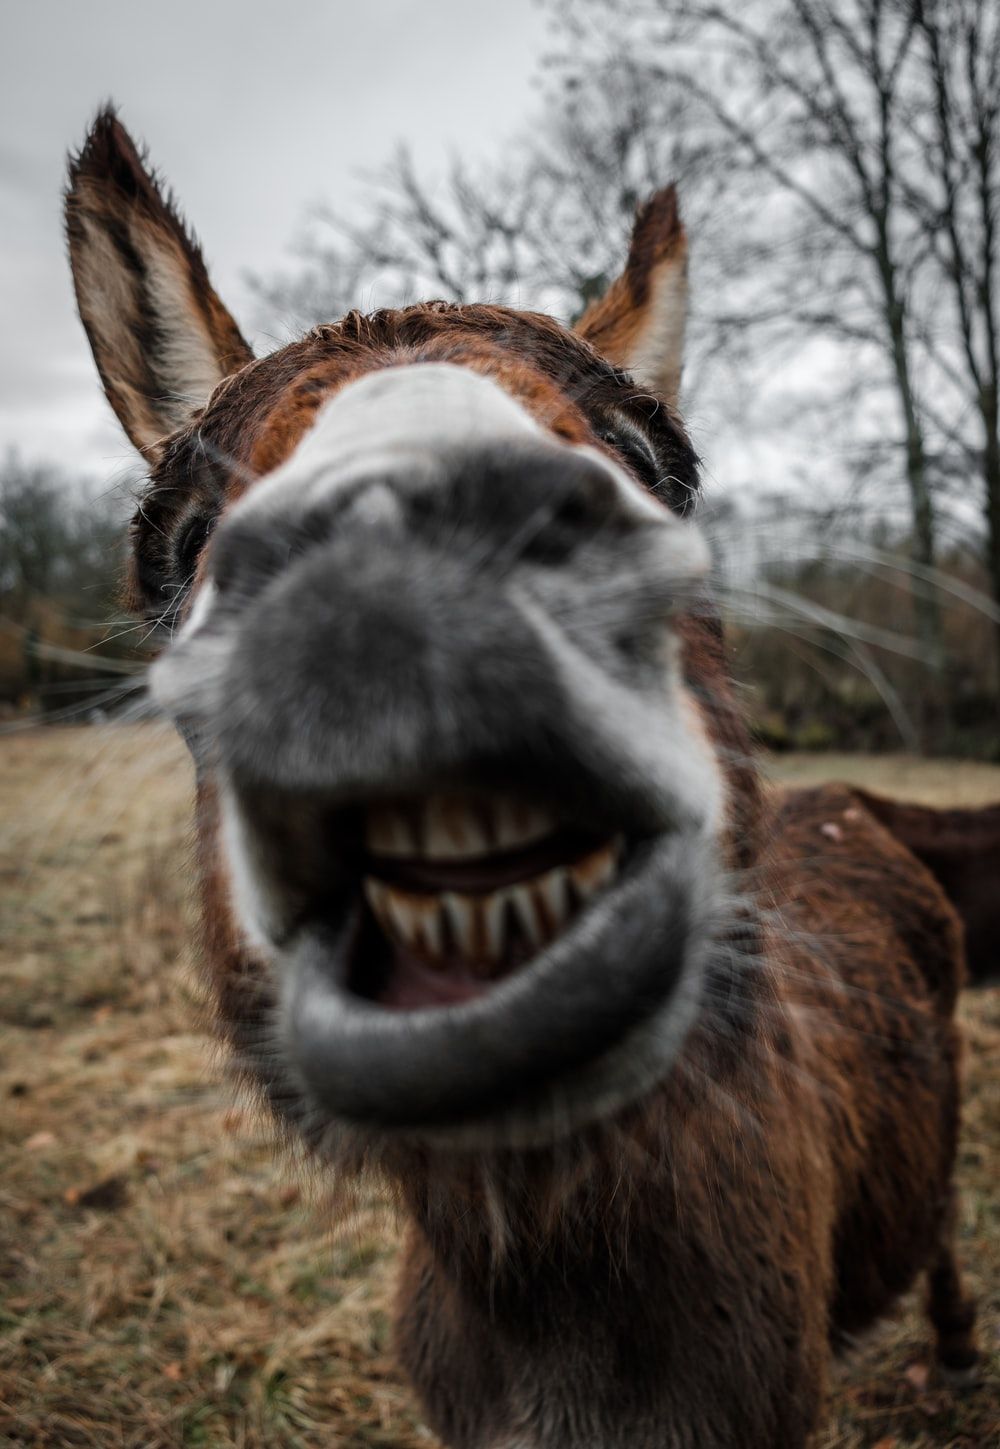 Más de 100 fotos de burros | Descargar imágenes gratis